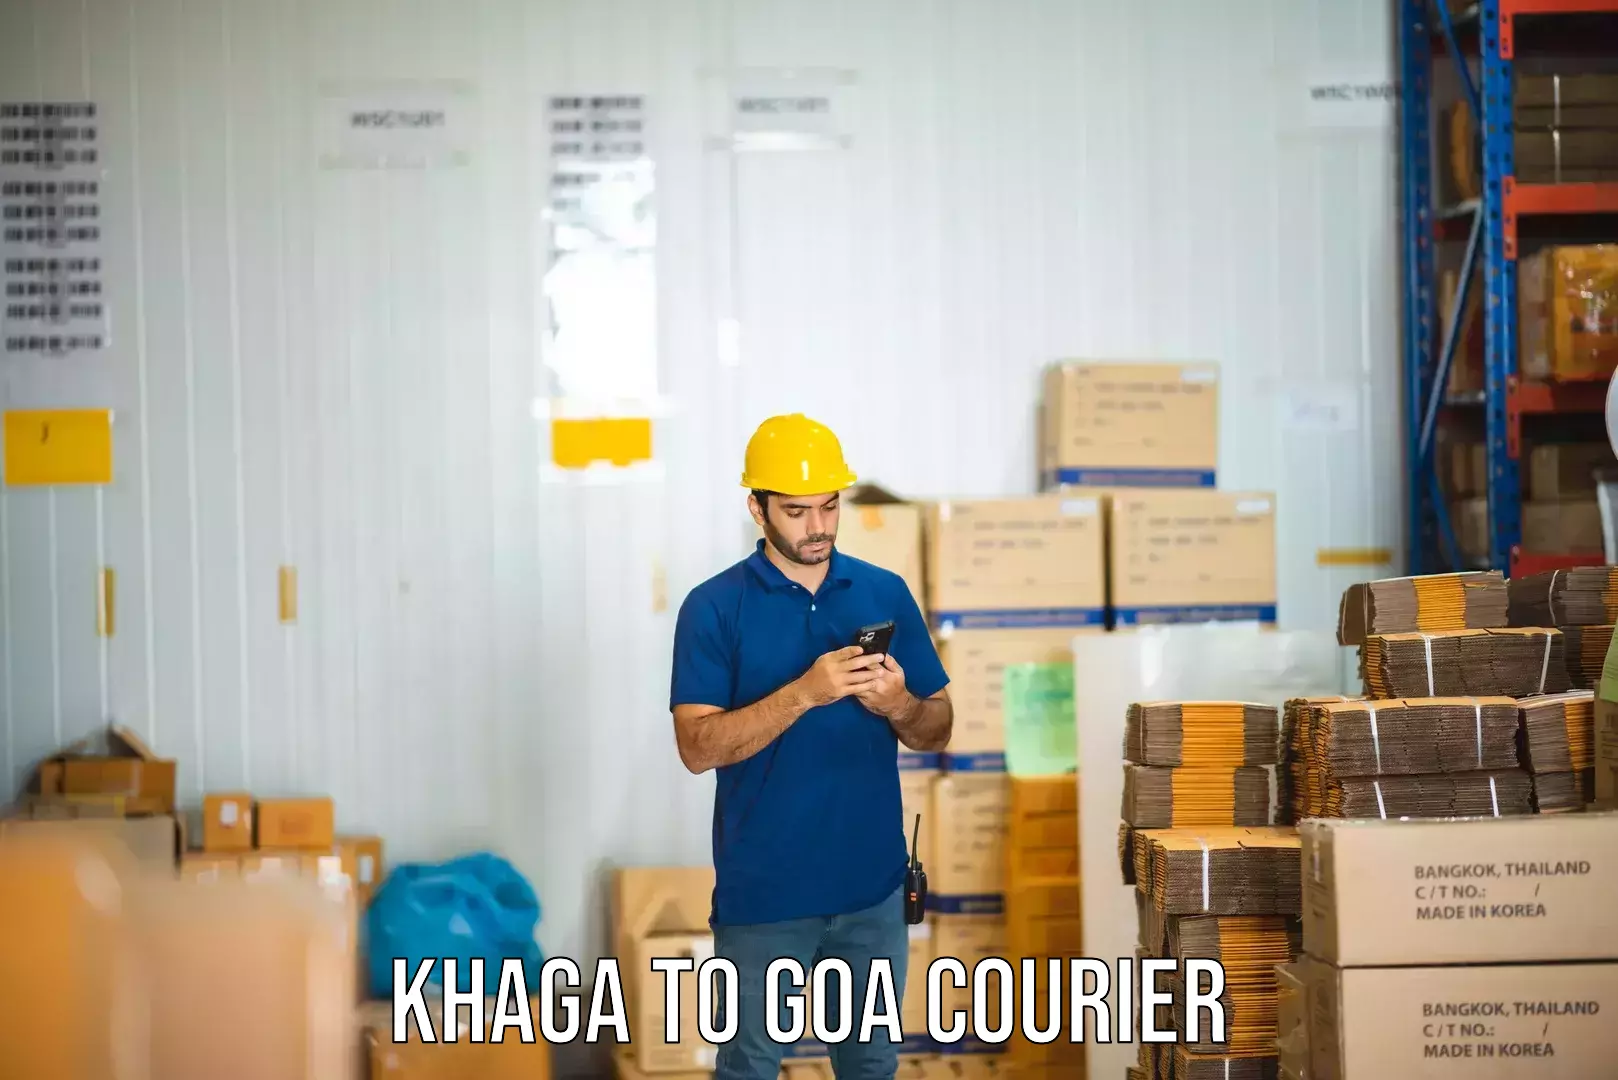 Expedited shipping methods Khaga to Goa